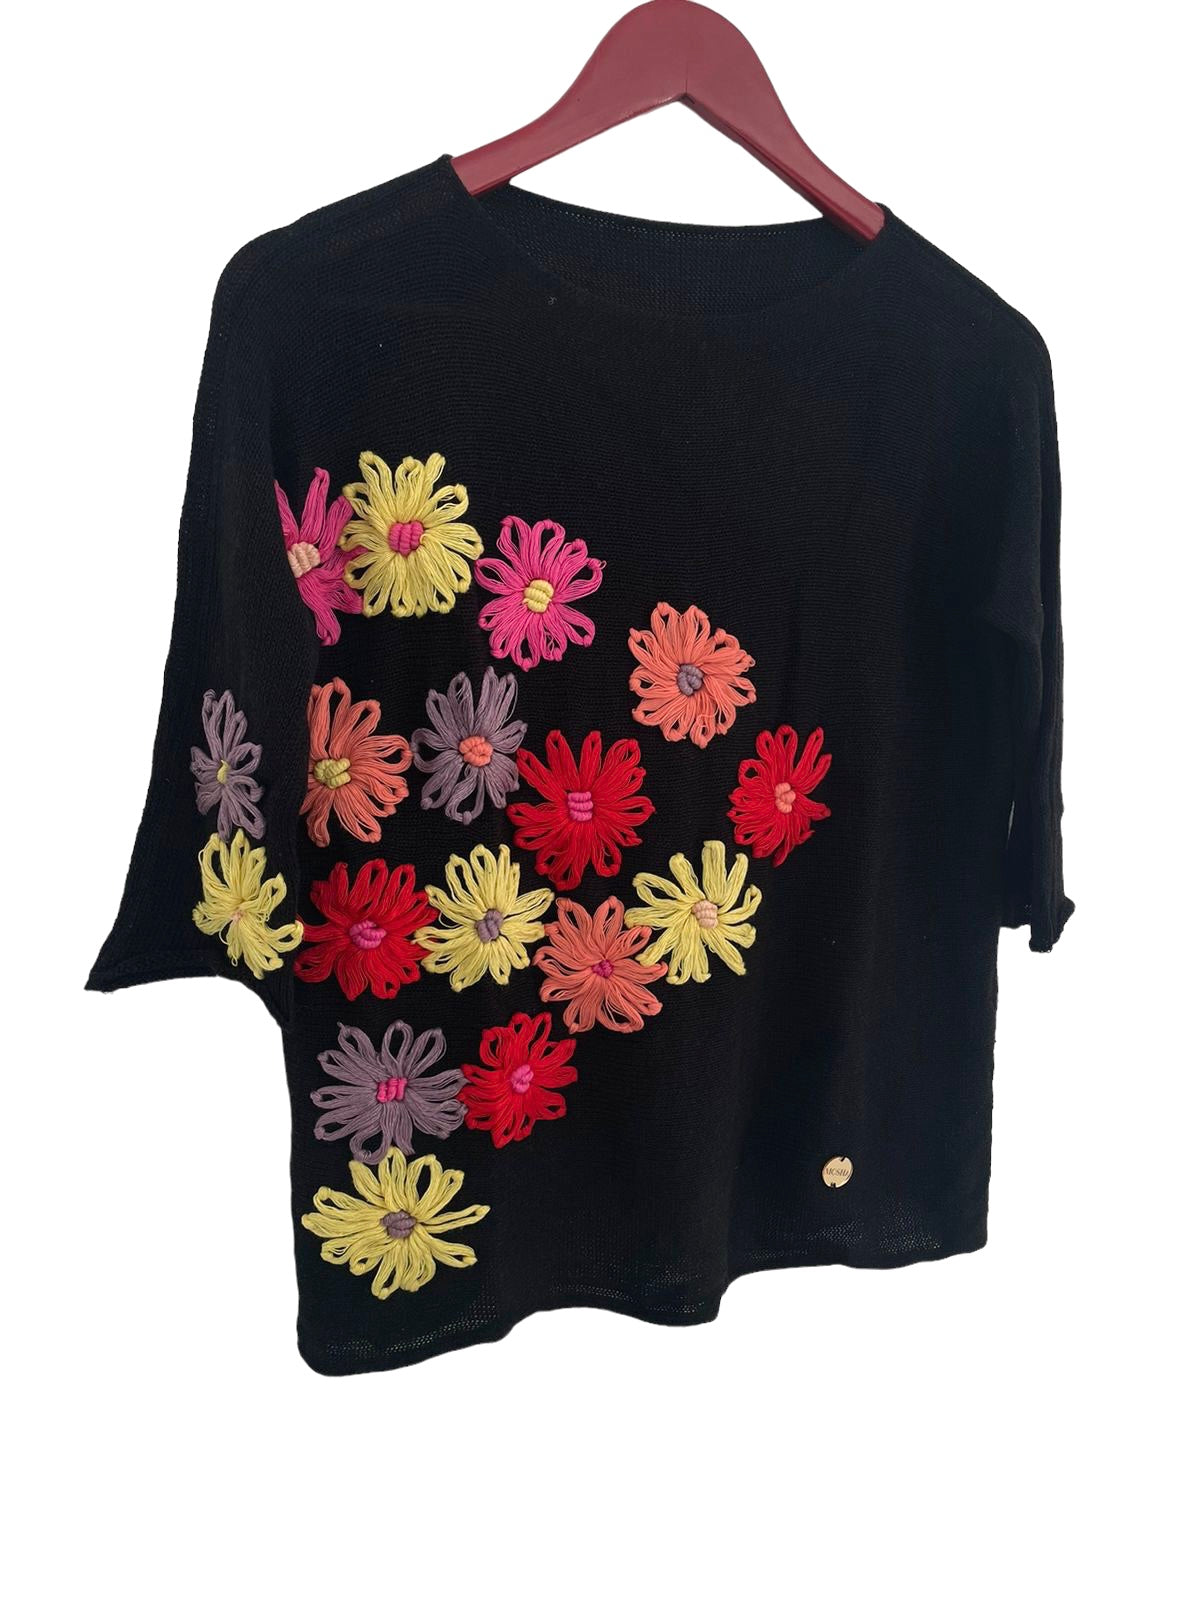 Sweater Madrigal Negro Flores Fucsia